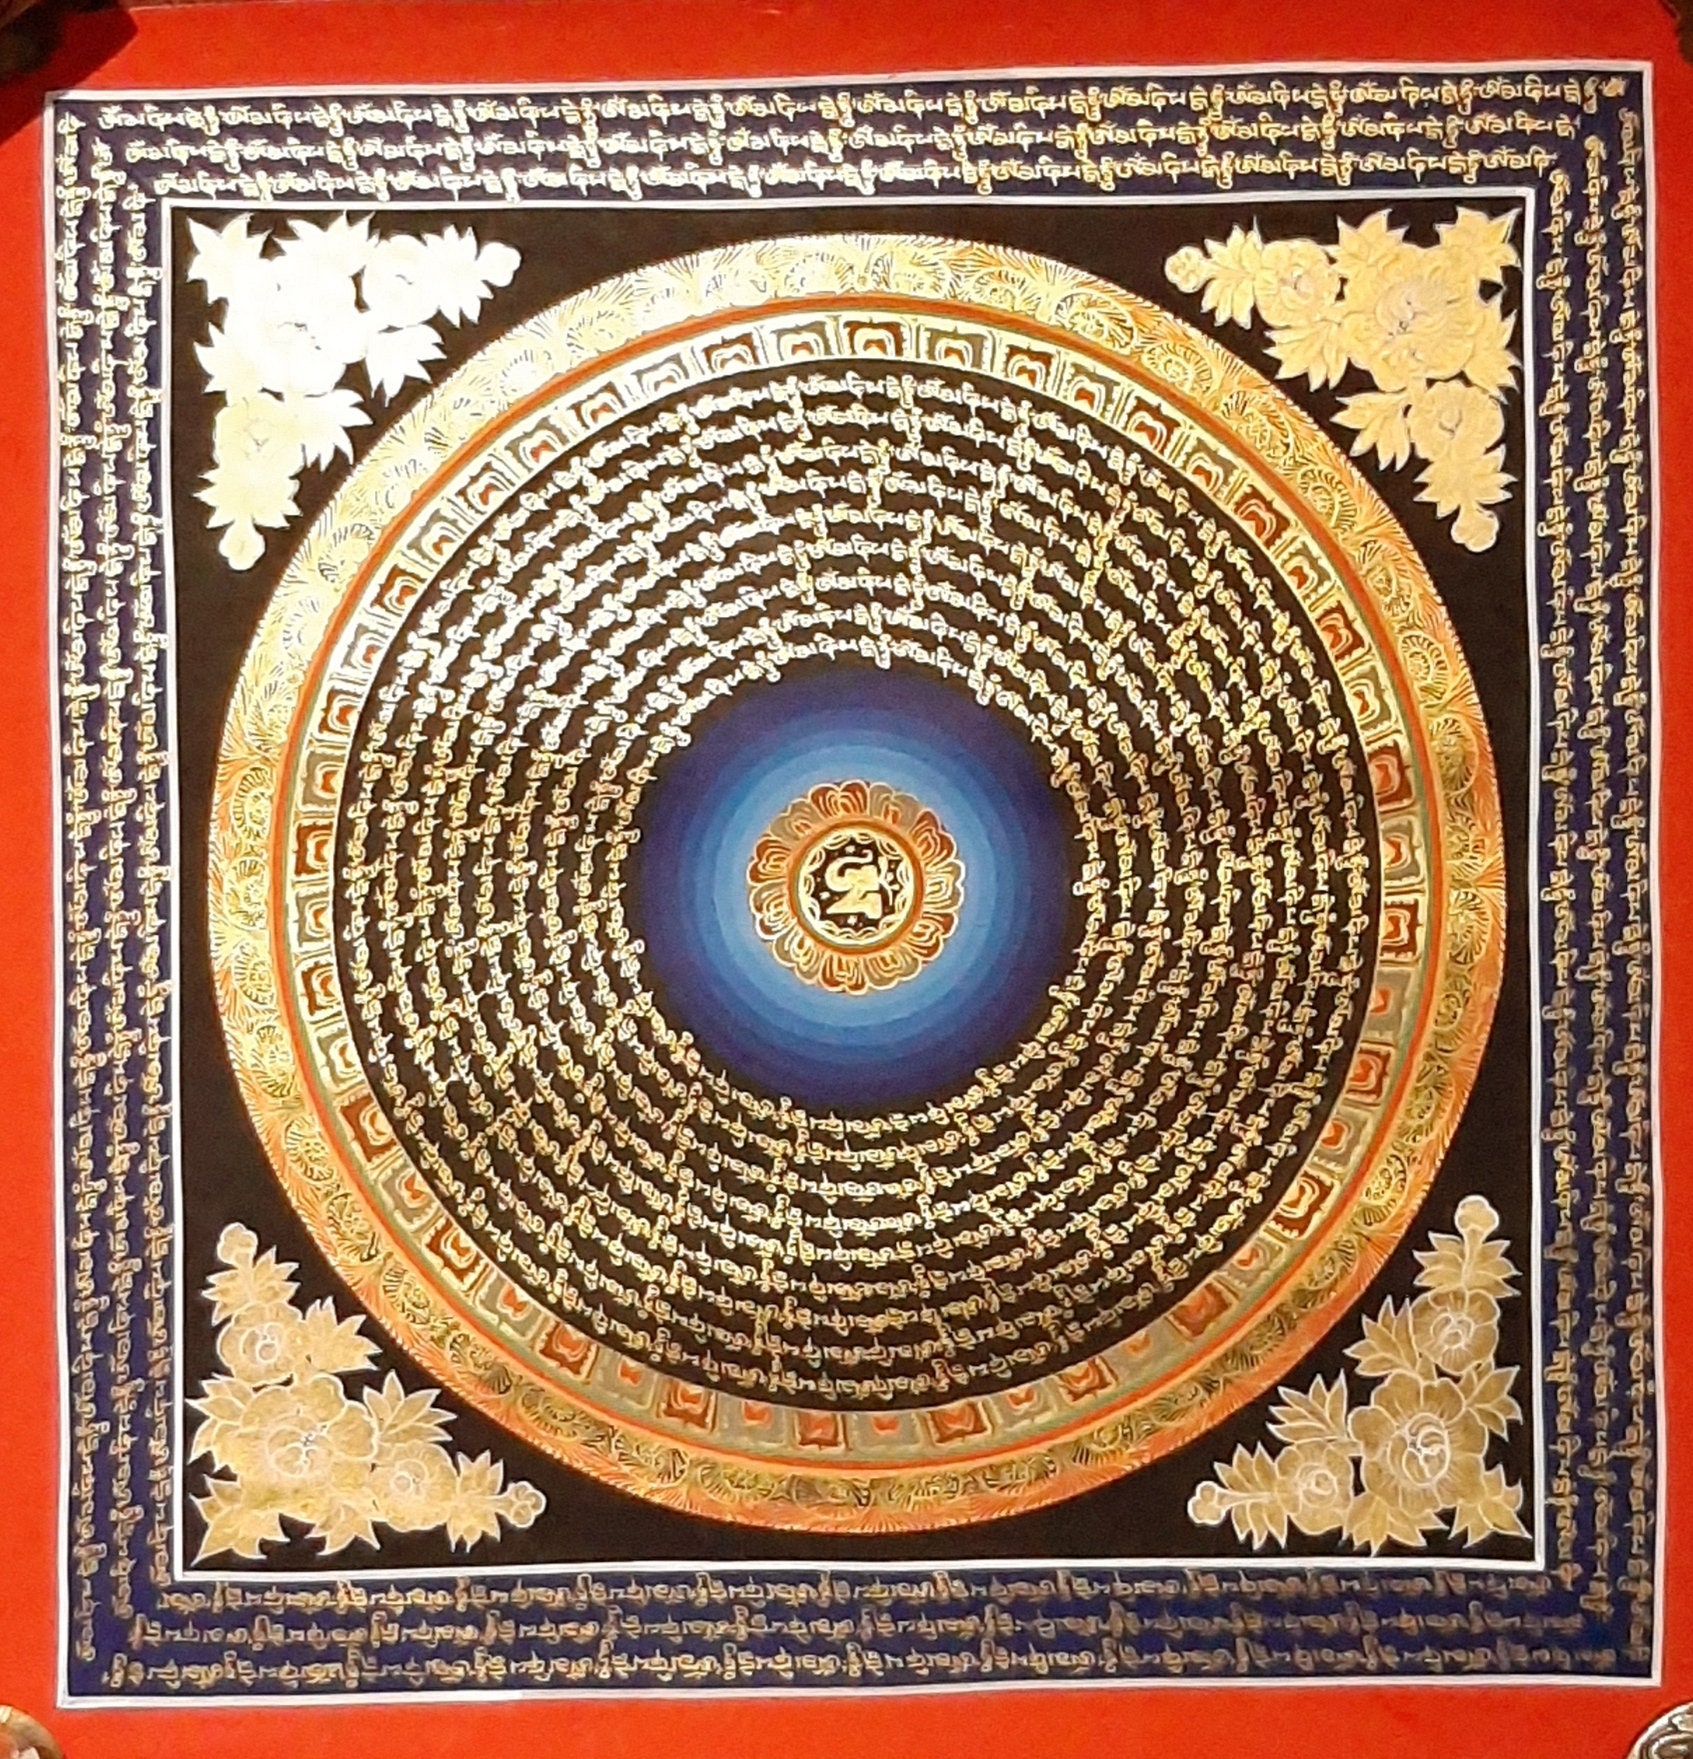 Buy Mandala dot painting Handmade Painting by SAMRITI VERMA. Code